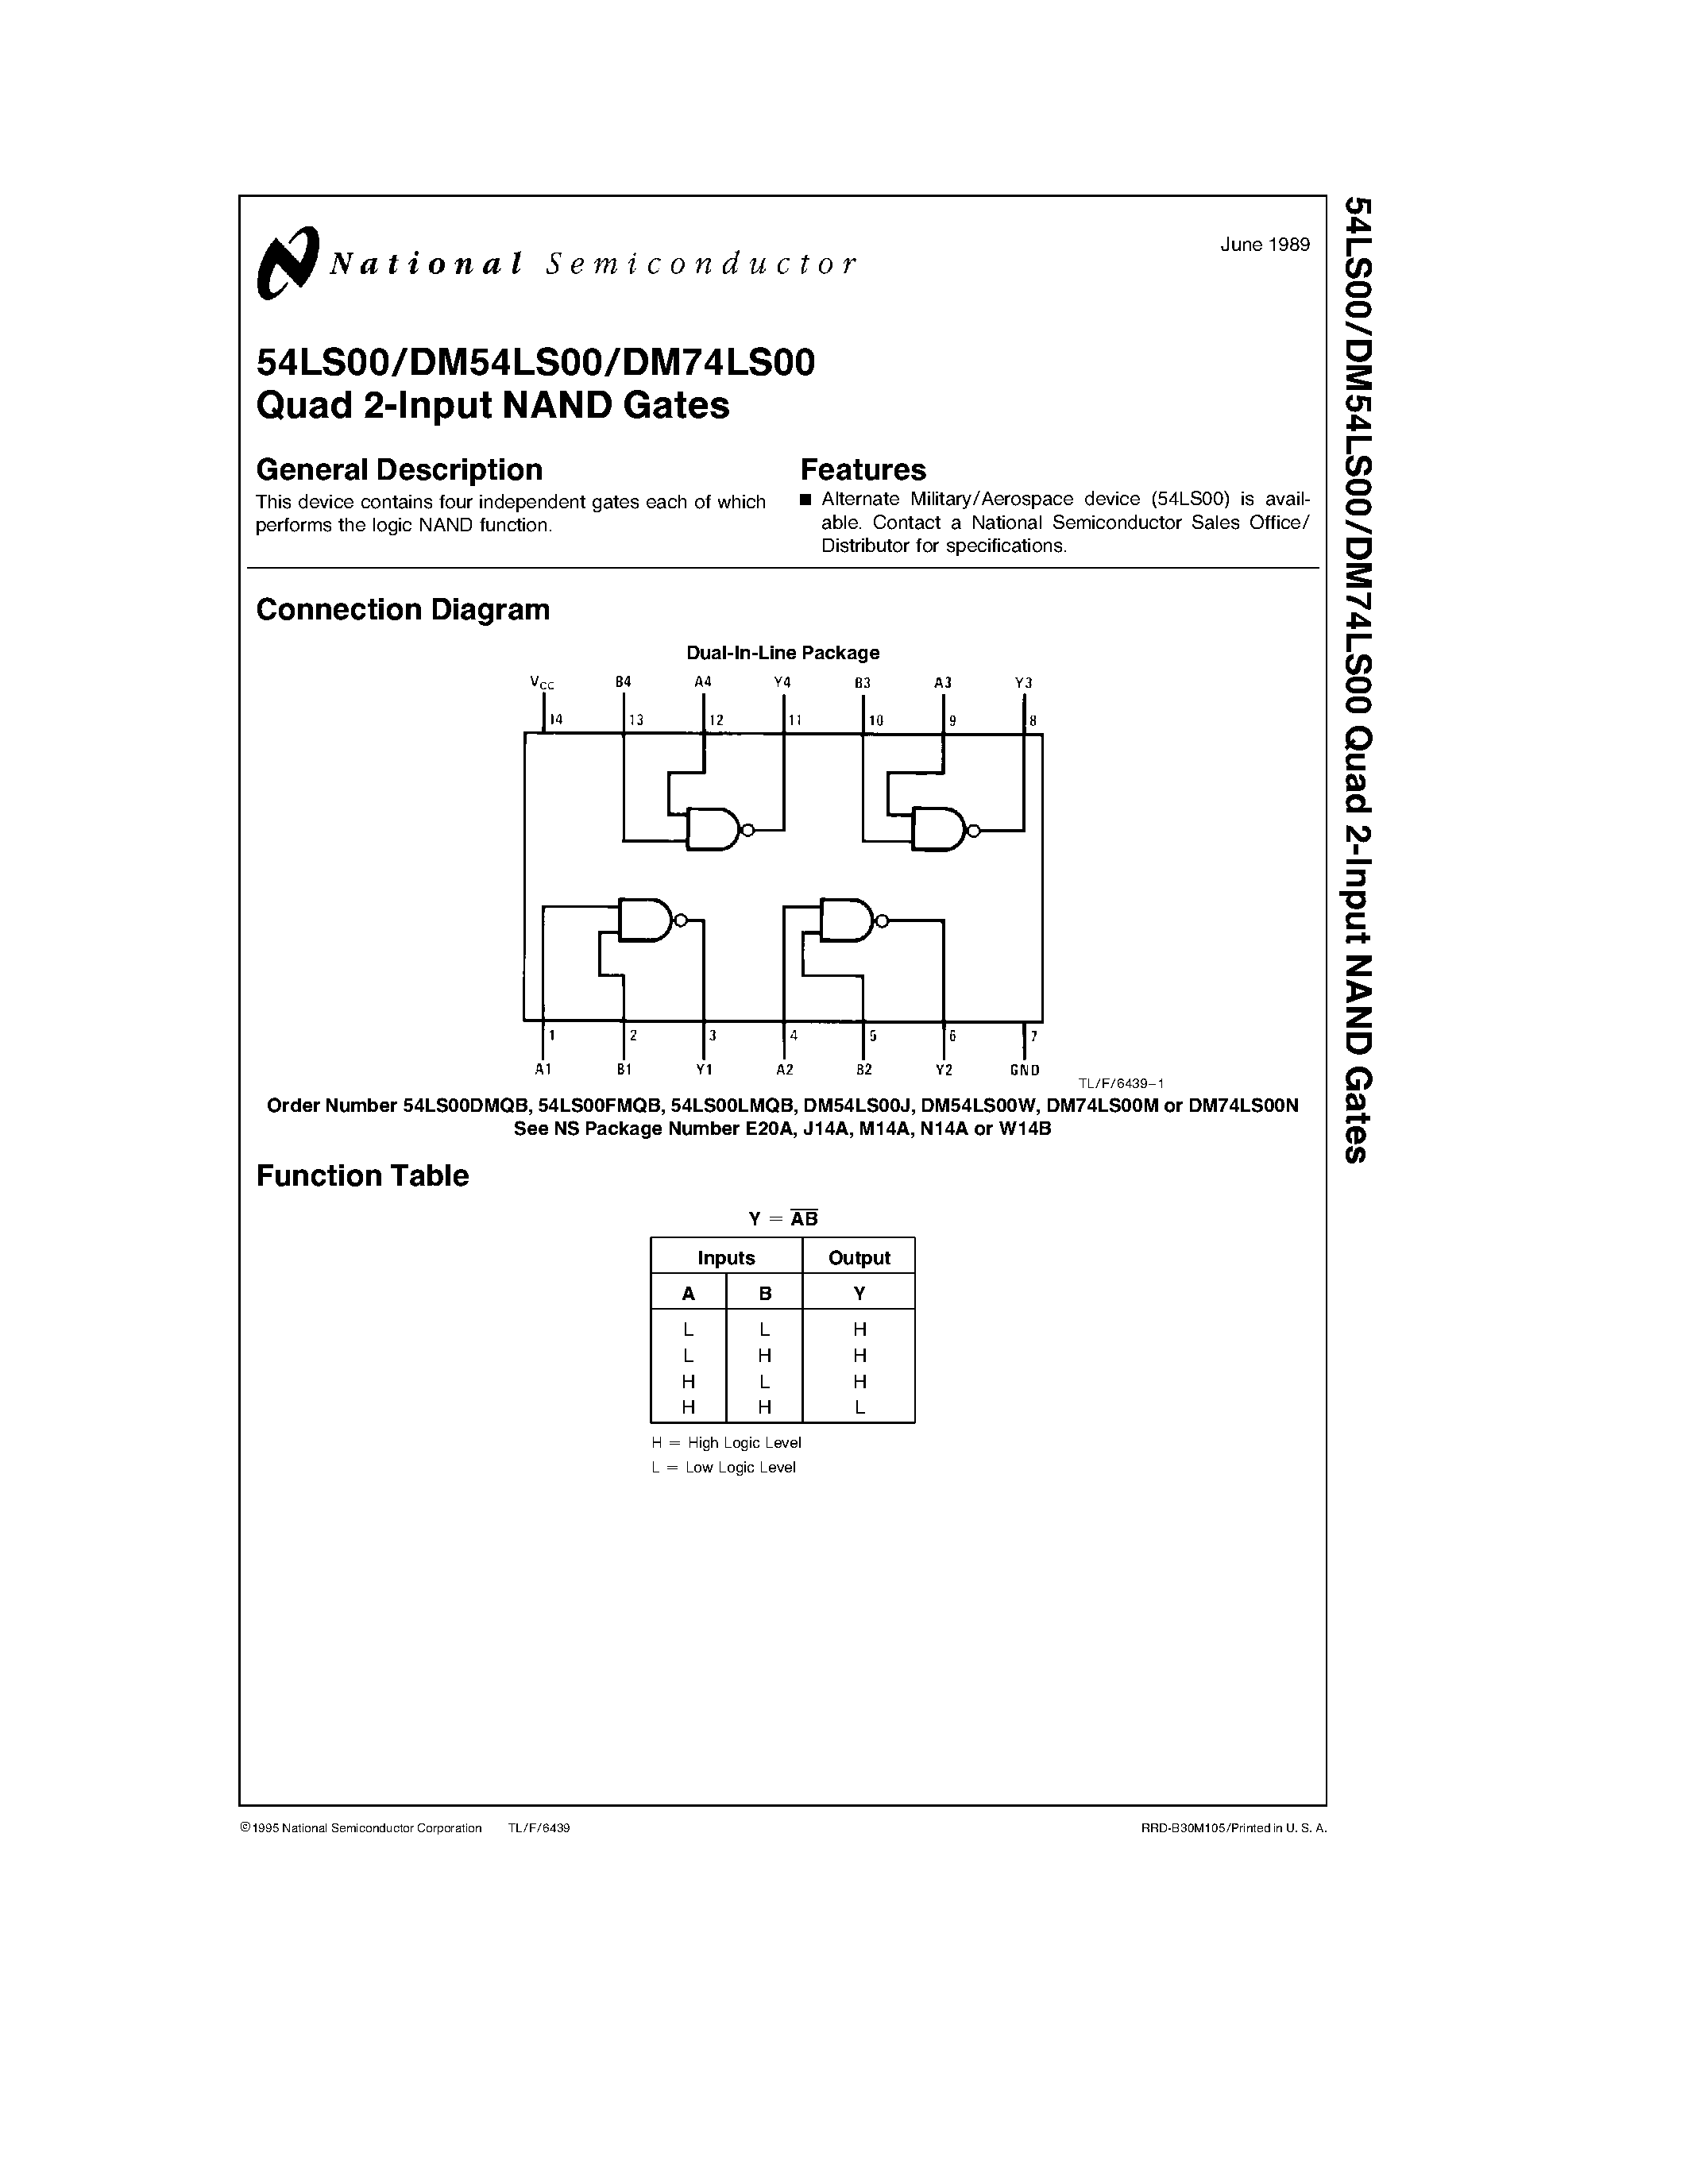 Даташит DM74LS00J - Quad 2-Input NAND Gates страница 1